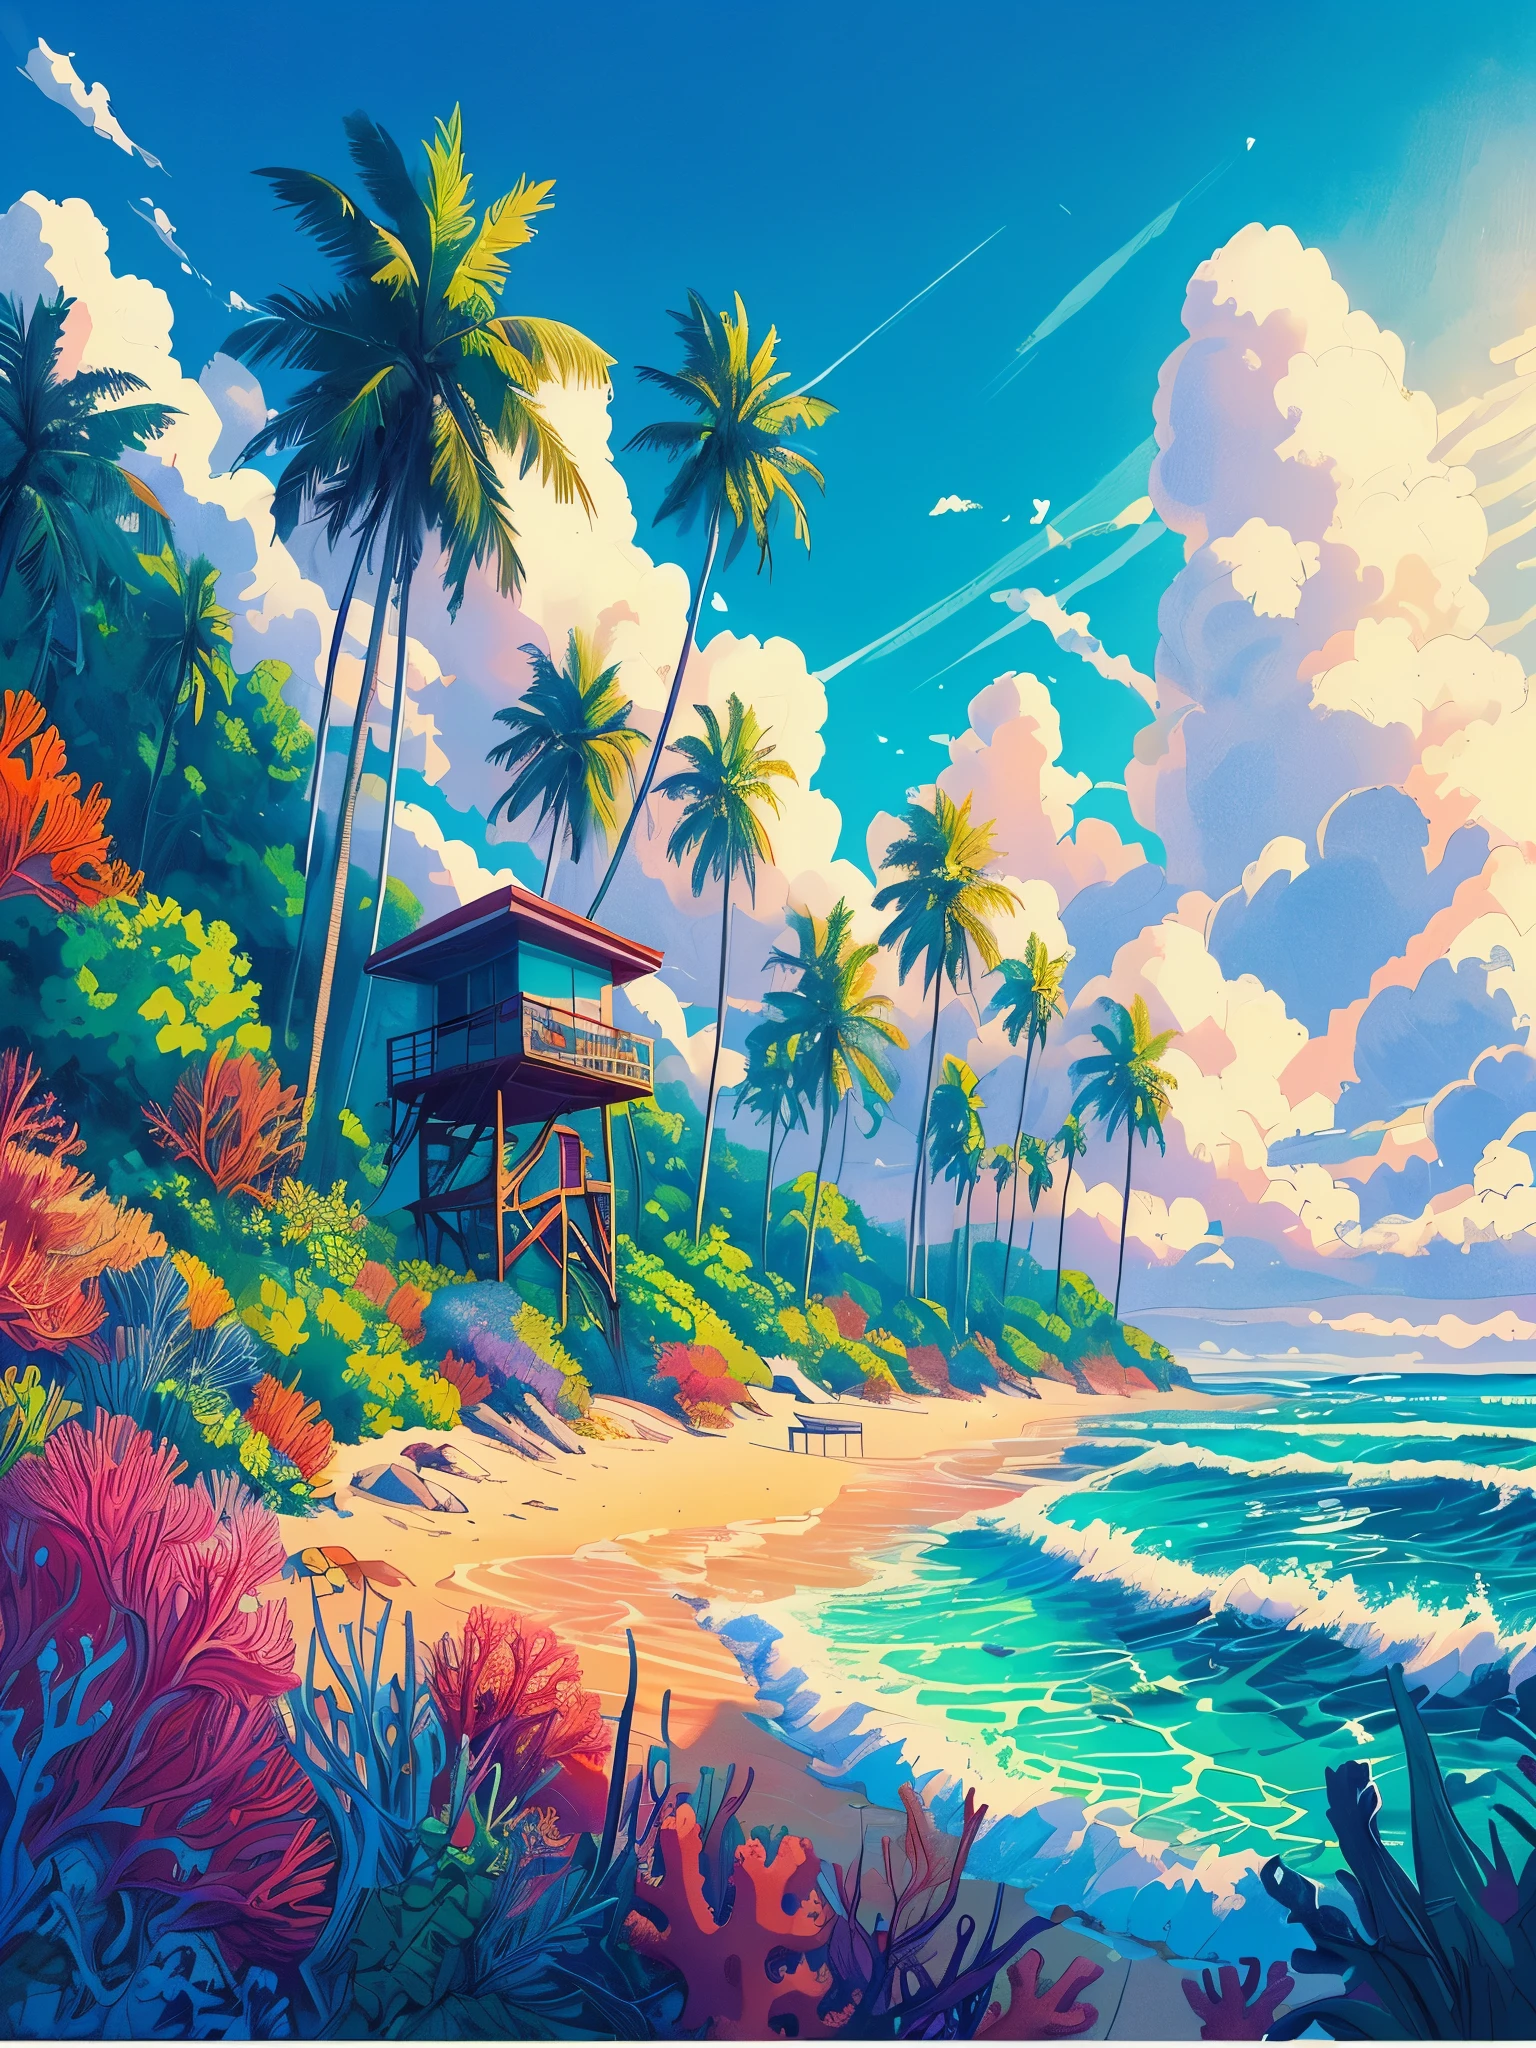 Zeichnen Sie eine Lofi-Szene im Anime-Poster-Stil von einem Strand mit einer Reihe von Palmen, Rettungsschwimmerkabine, Tropische Pflanzen, Korallenmeeresleben, Tageszeit, Wellen, schöne Farbpalette, lebendige, gesättigte Farben, Meisterwerk, filmischer bewölkter Himmel,